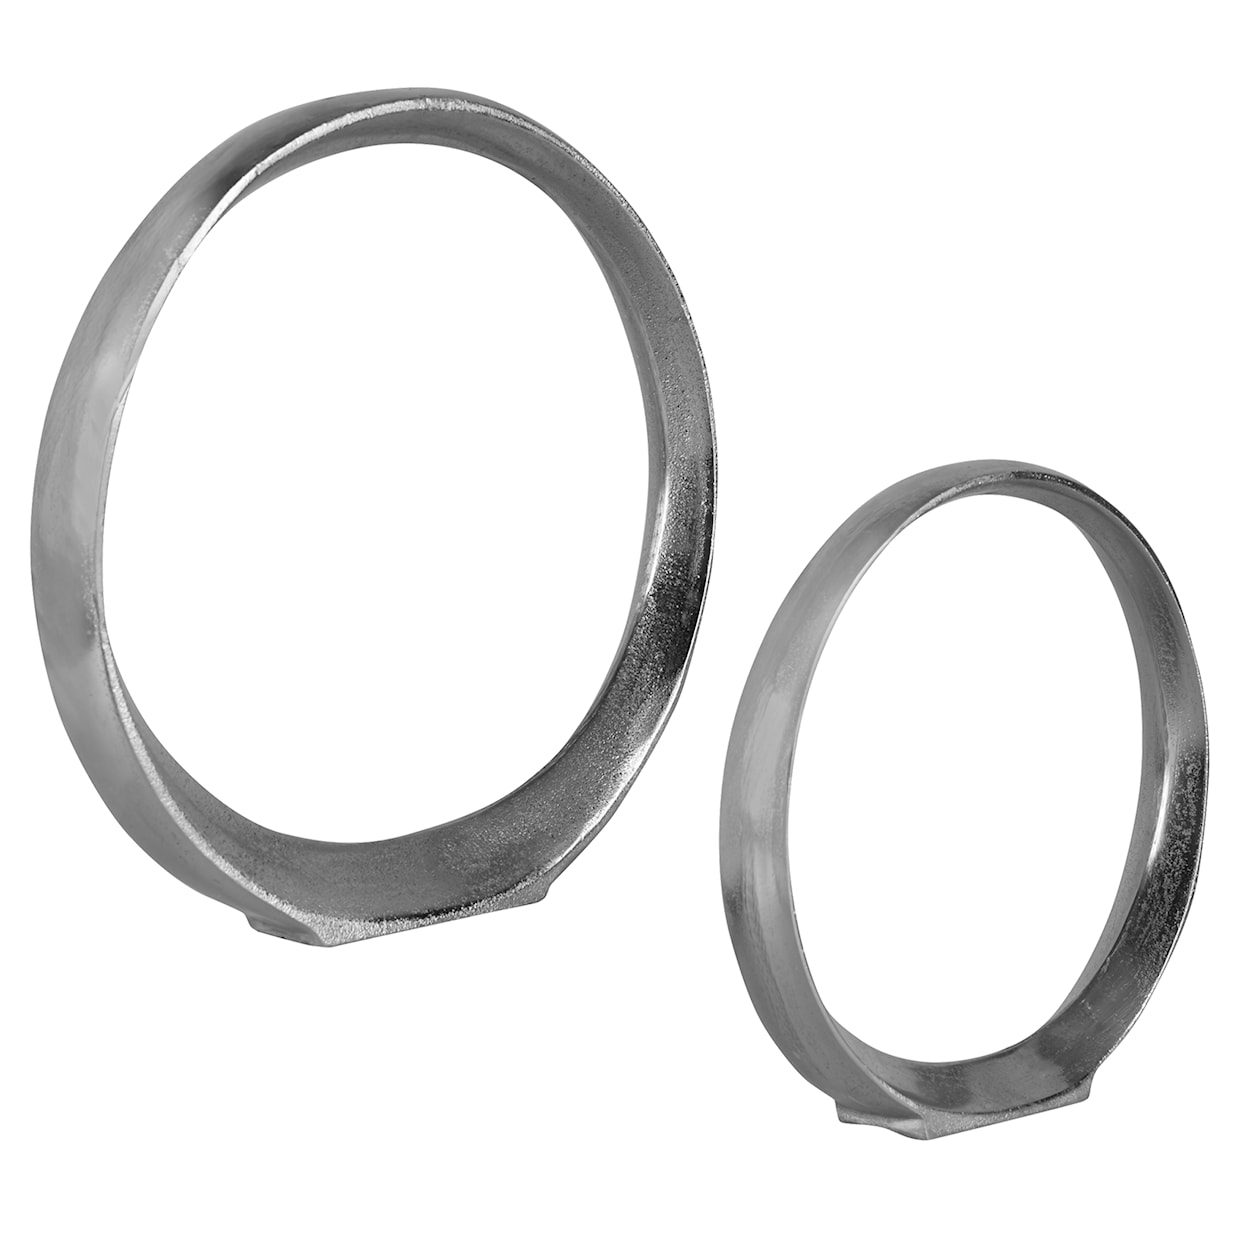 Uttermost Orbits Orbits Nickel Ring Sculptures S/2